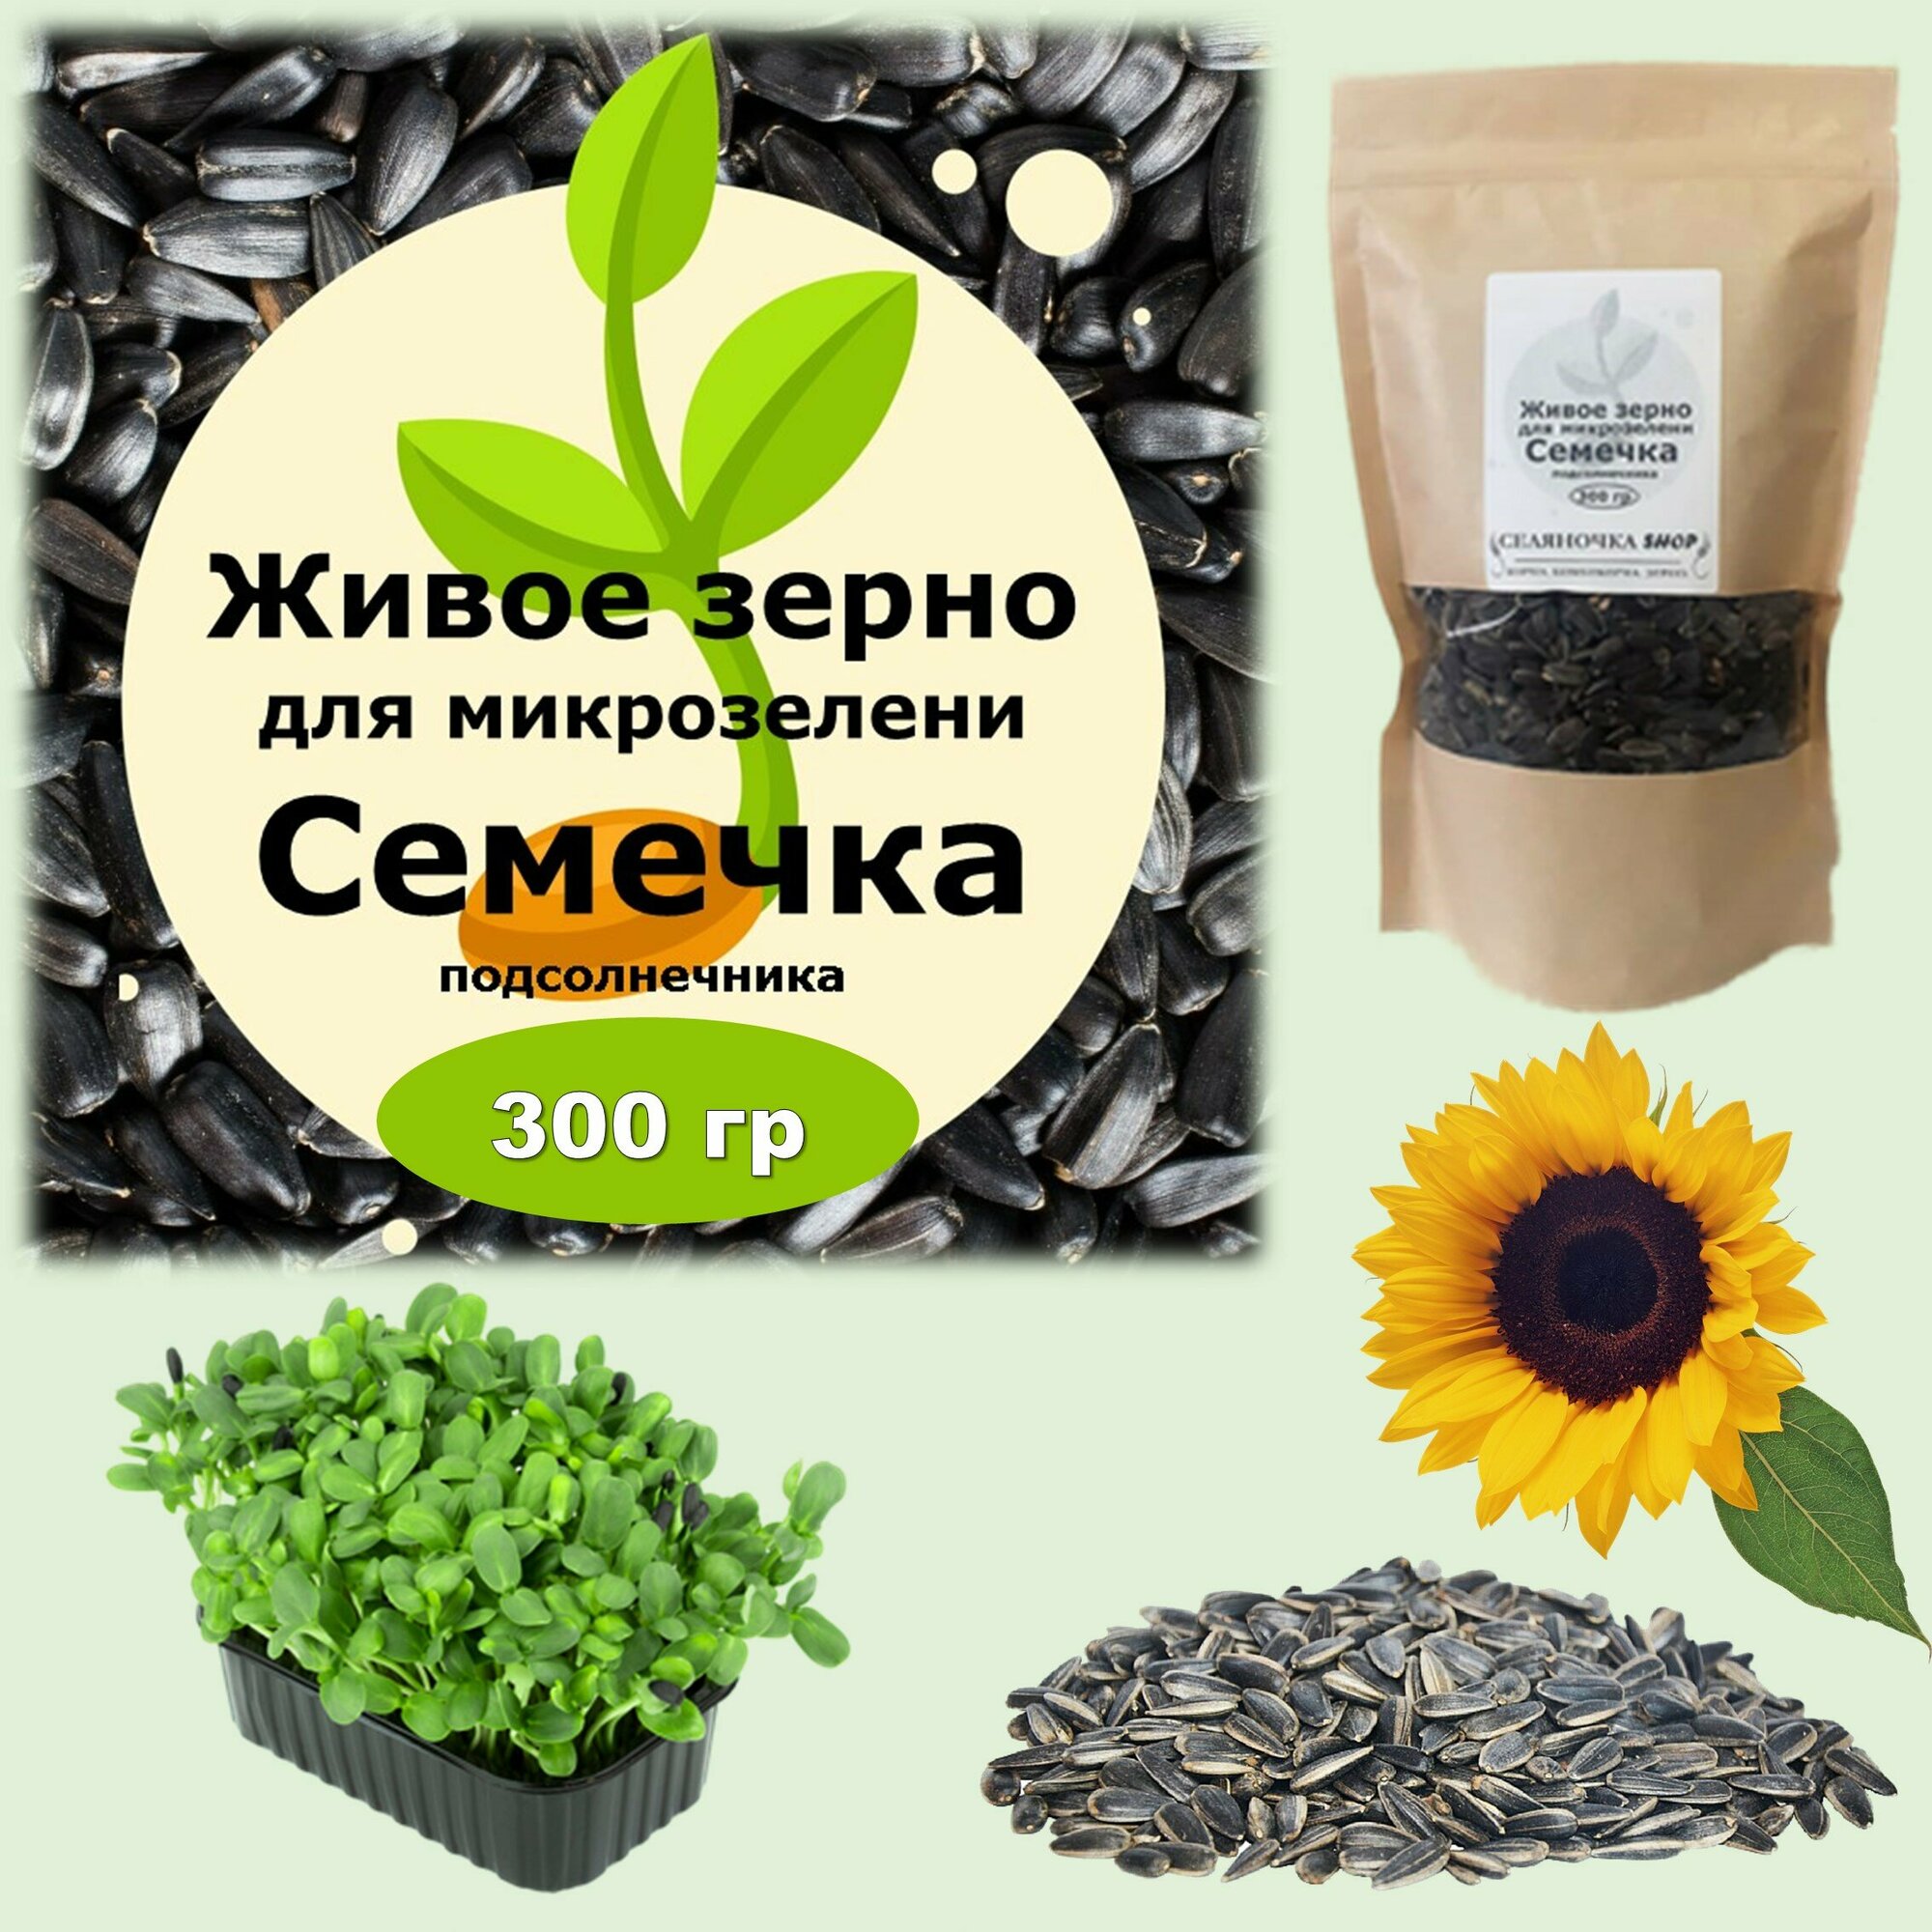 Семена для микрозелени "Живое зерно" Семечка подсолнечника, 300 гр